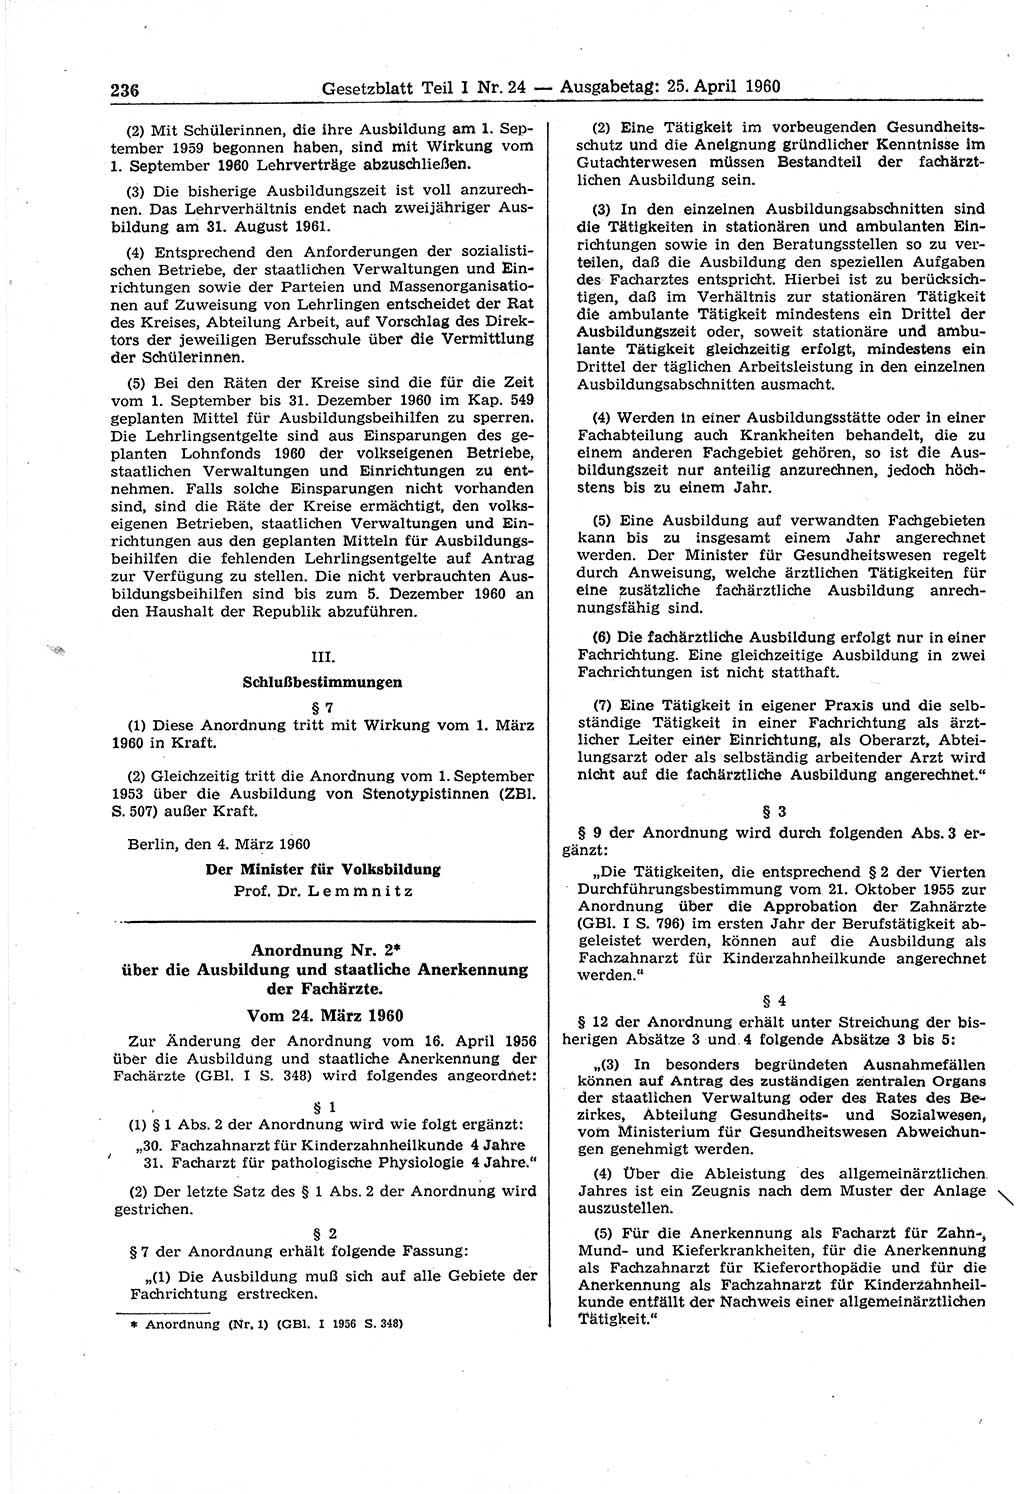 Gesetzblatt (GBl.) der Deutschen Demokratischen Republik (DDR) Teil Ⅰ 1960, Seite 236 (GBl. DDR Ⅰ 1960, S. 236)